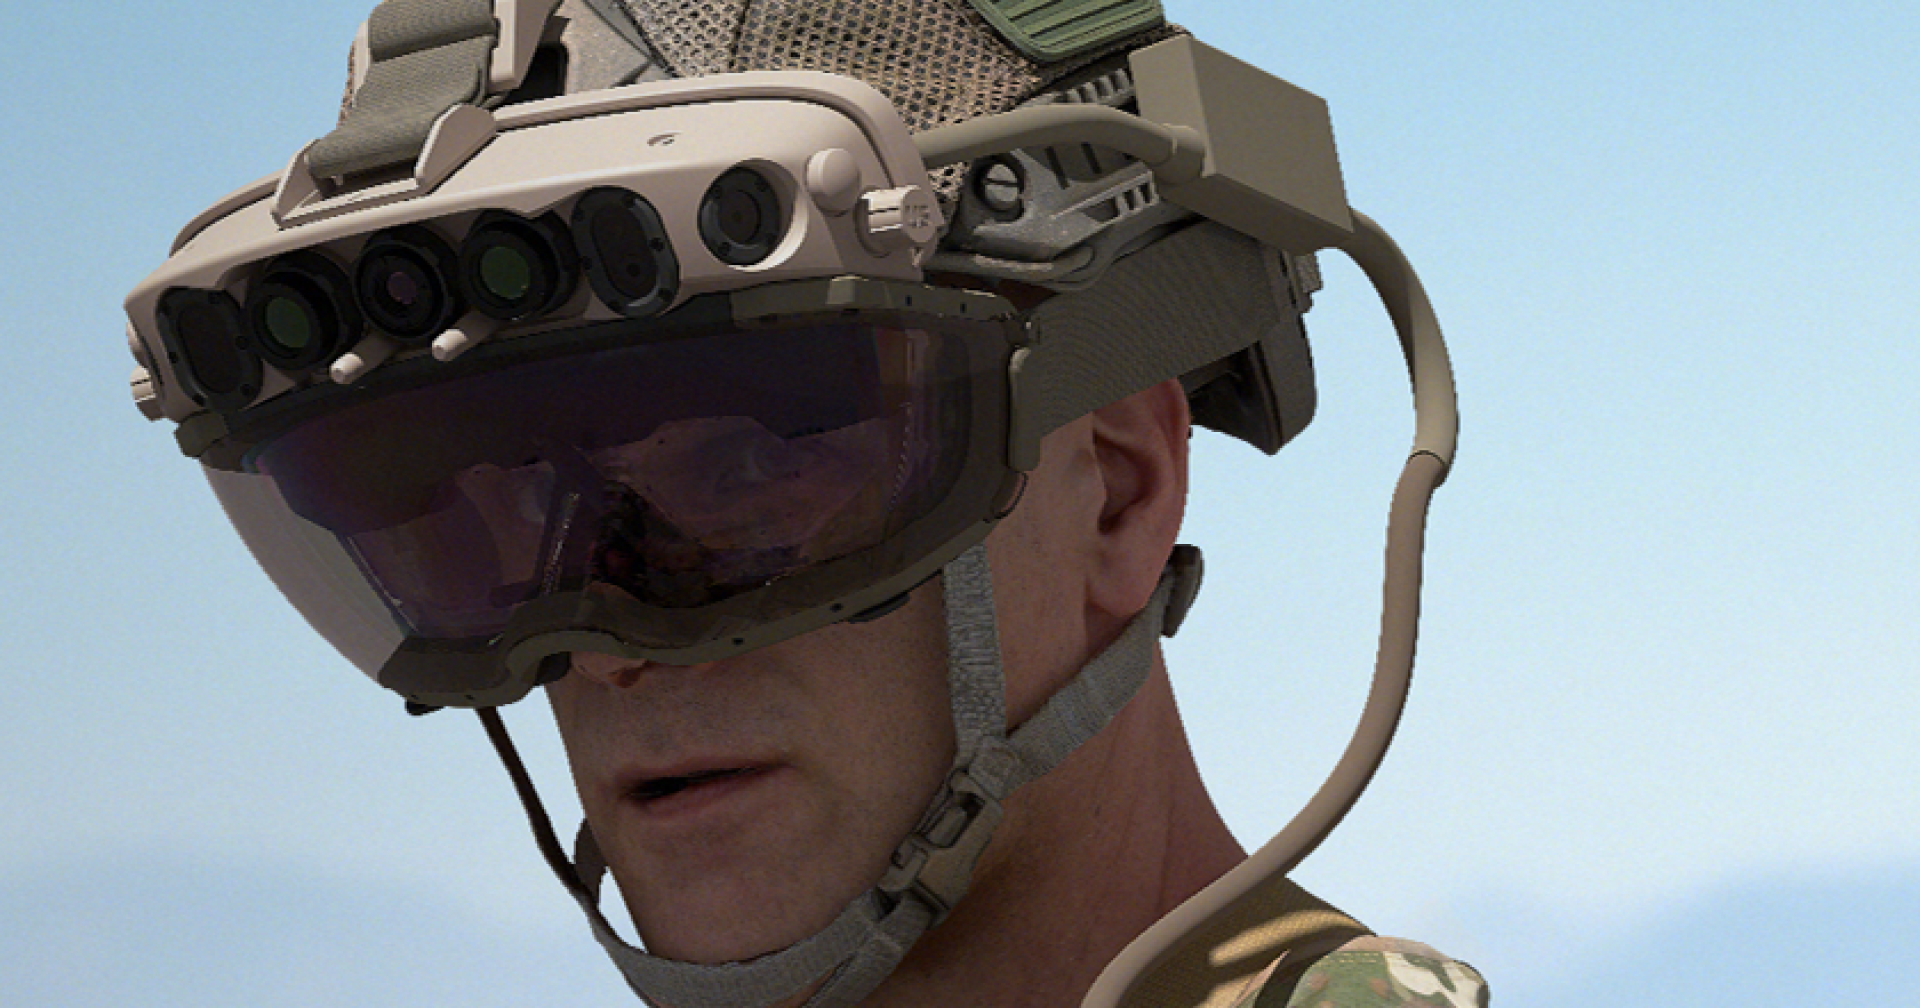 แหล่งข่าวระบุว่าการทดสอบแว่น AR ของ Microsoft ที่ใช้ในกองทัพสหรัฐฯ ล้มเหลว